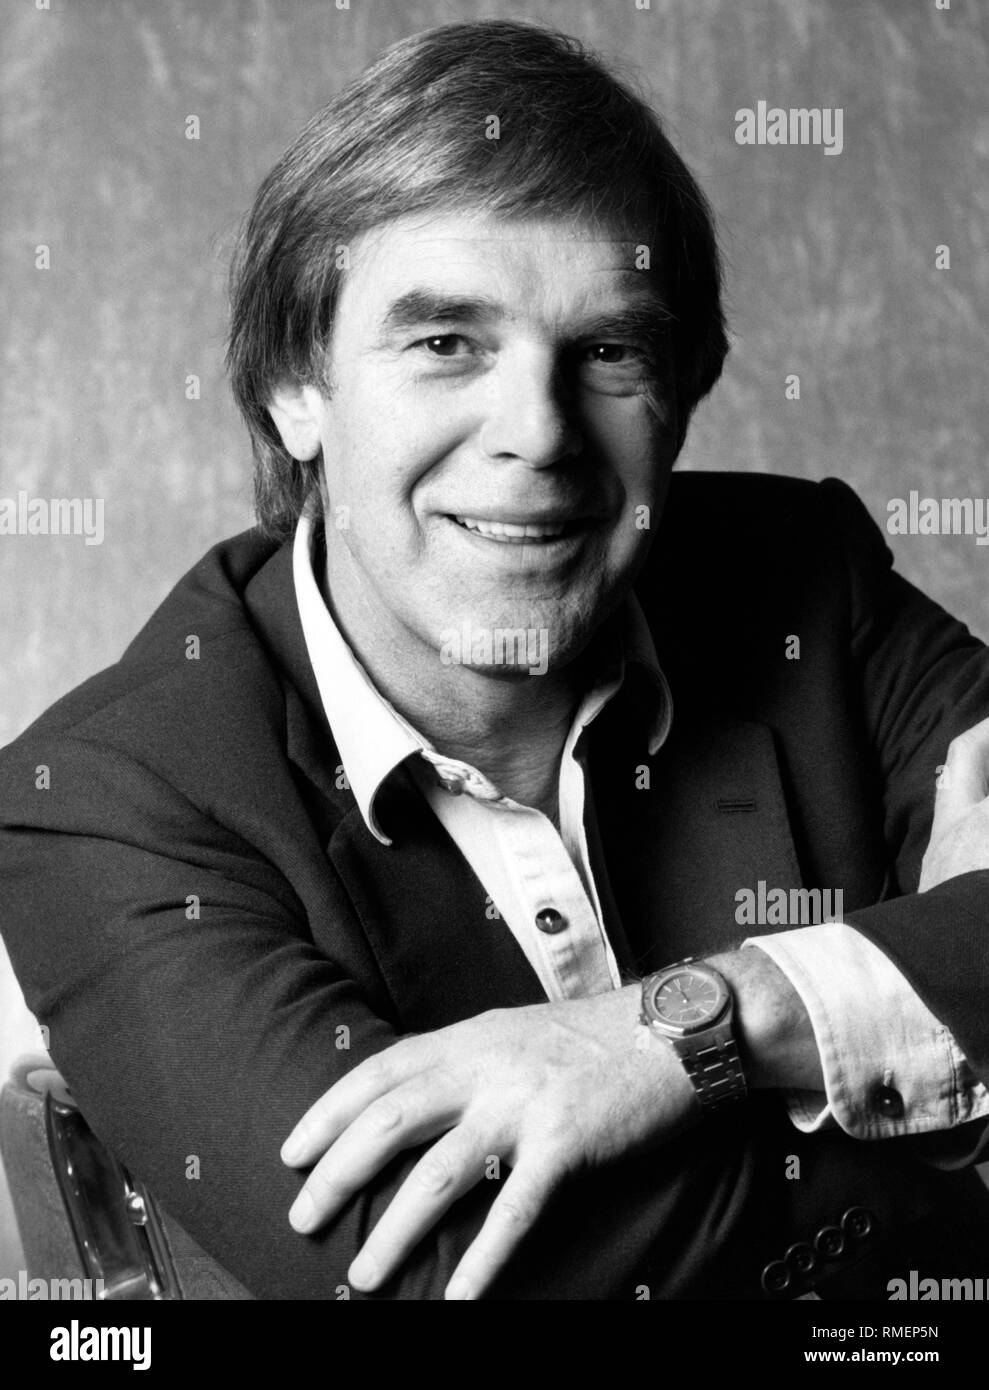 Porträt der Schauspieler, Regisseur und Autor Horst Juessen. Undatiertes Foto, wahrscheinlich Anfang der 90er Jahre. Stockfoto